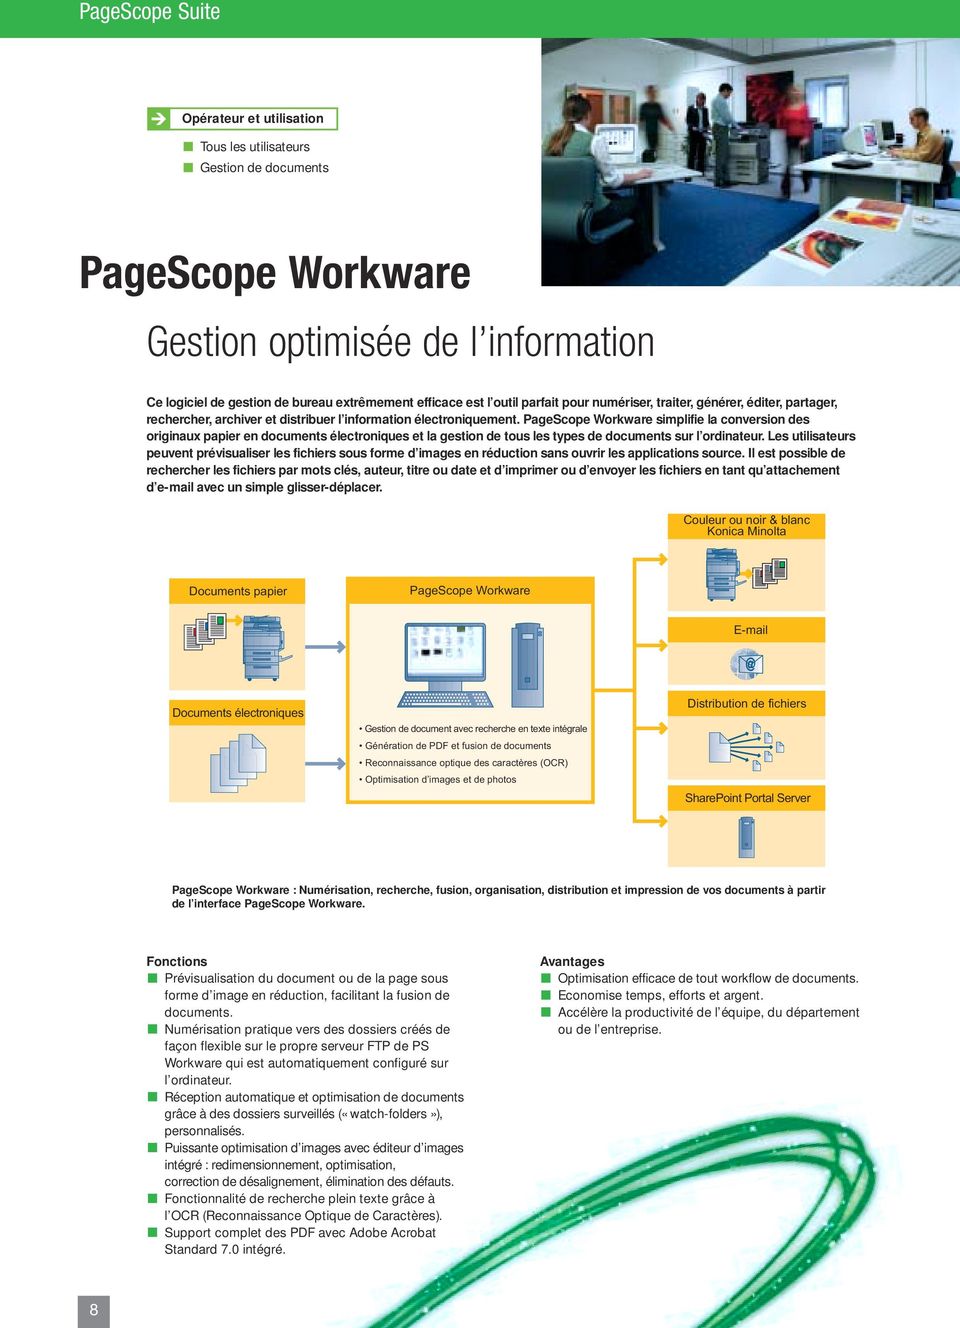 PageScope Workware simplifie la conversion des originaux papier en documents électroniques et la gestion de tous les types de documents sur l ordinateur.